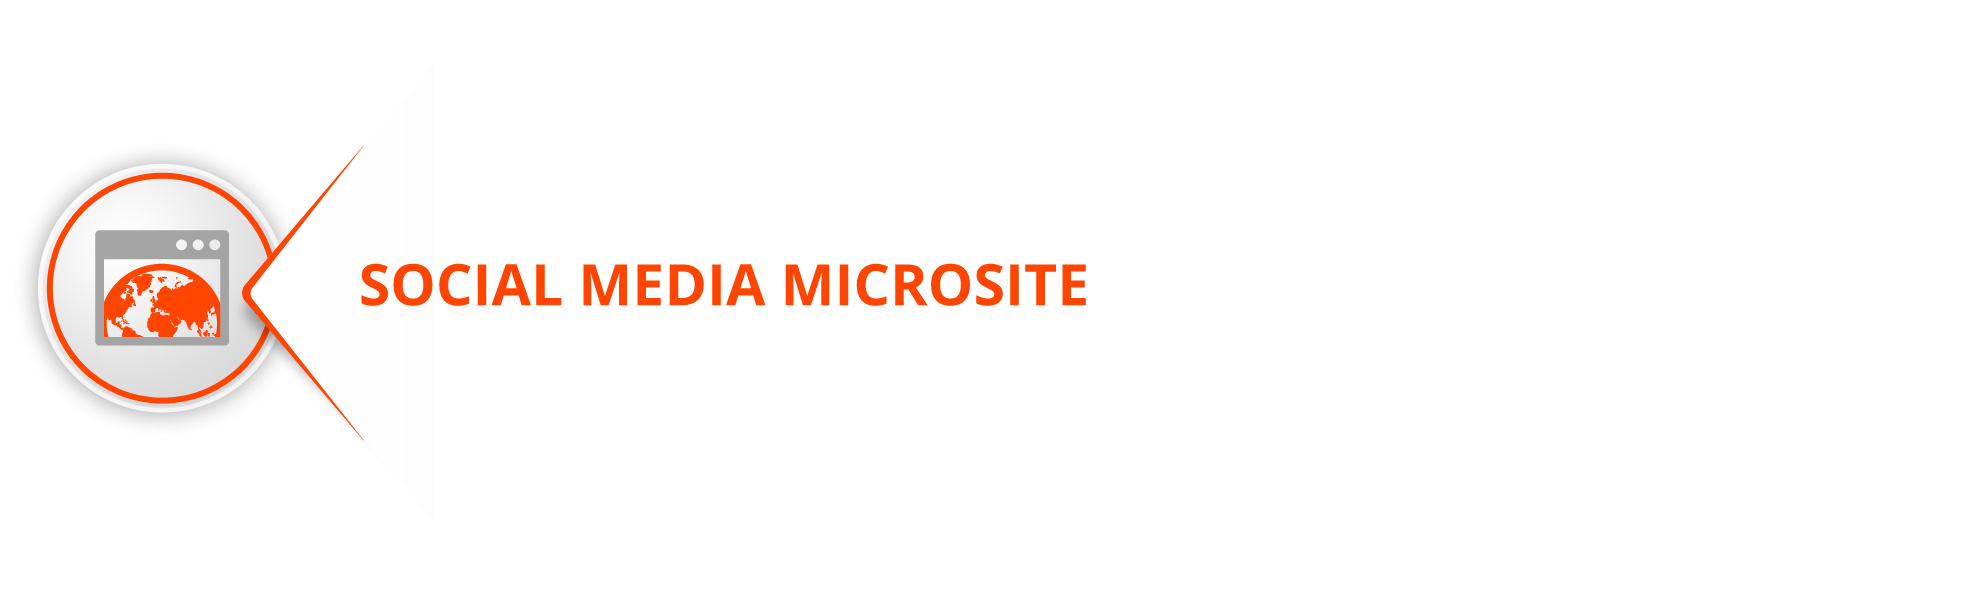 social-media-microsite-azobit